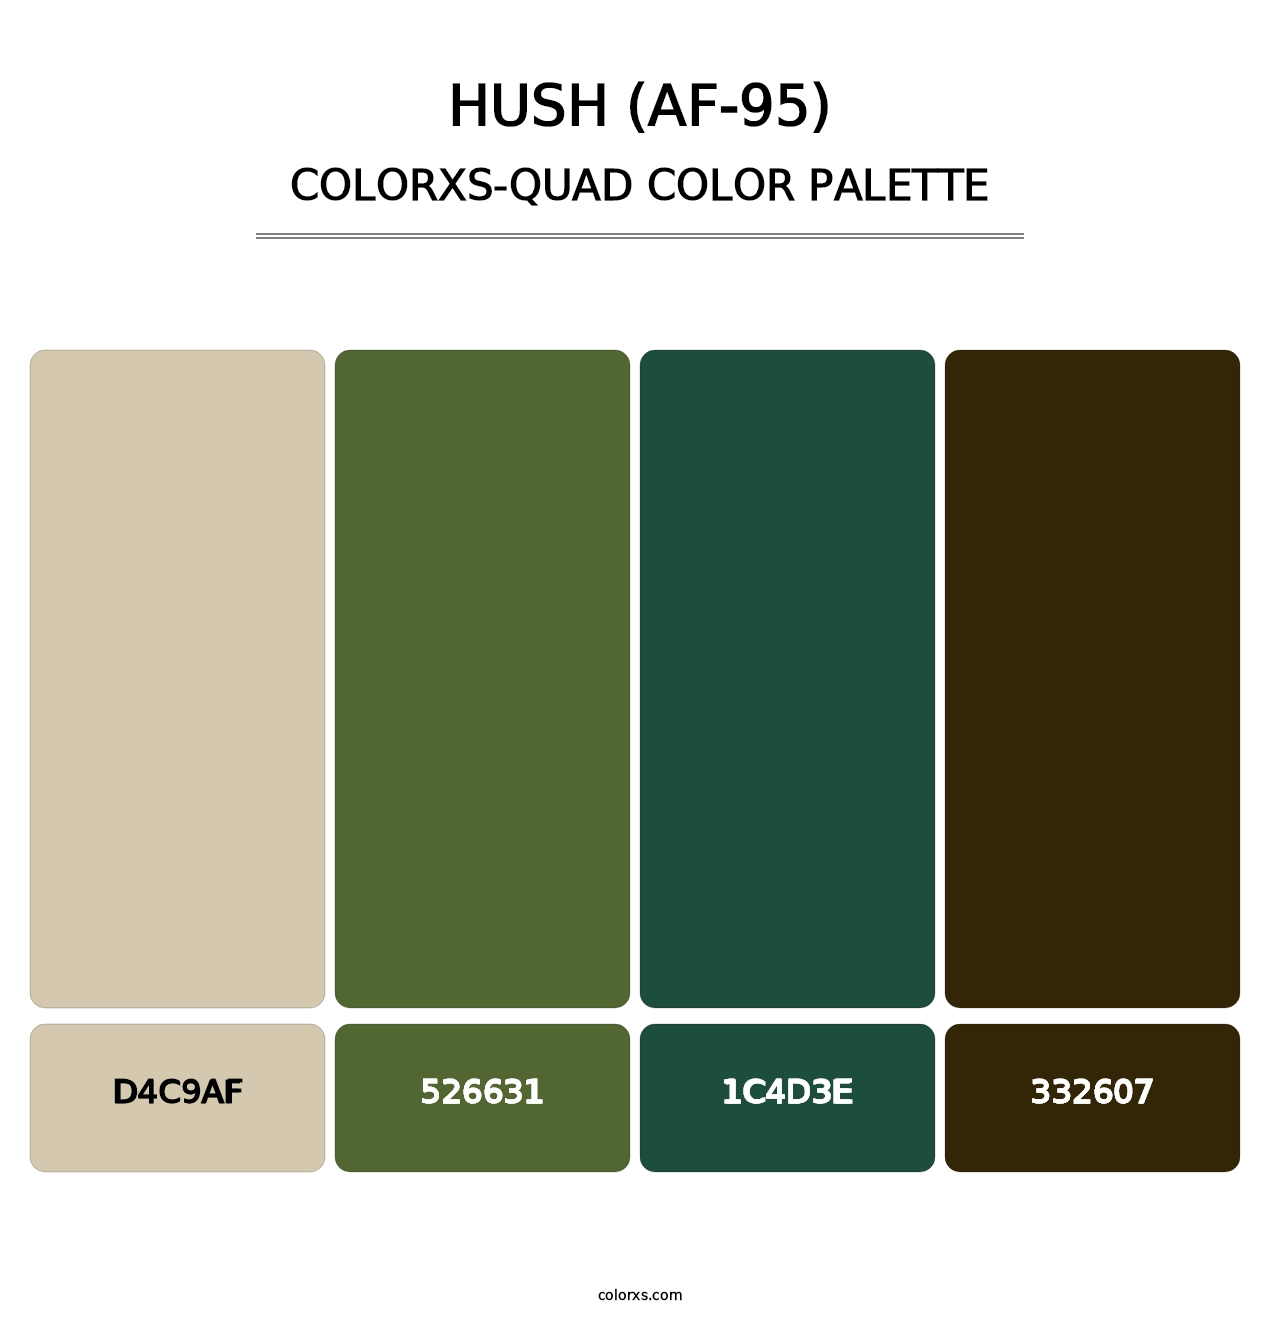 Hush (AF-95) - Colorxs Quad Palette